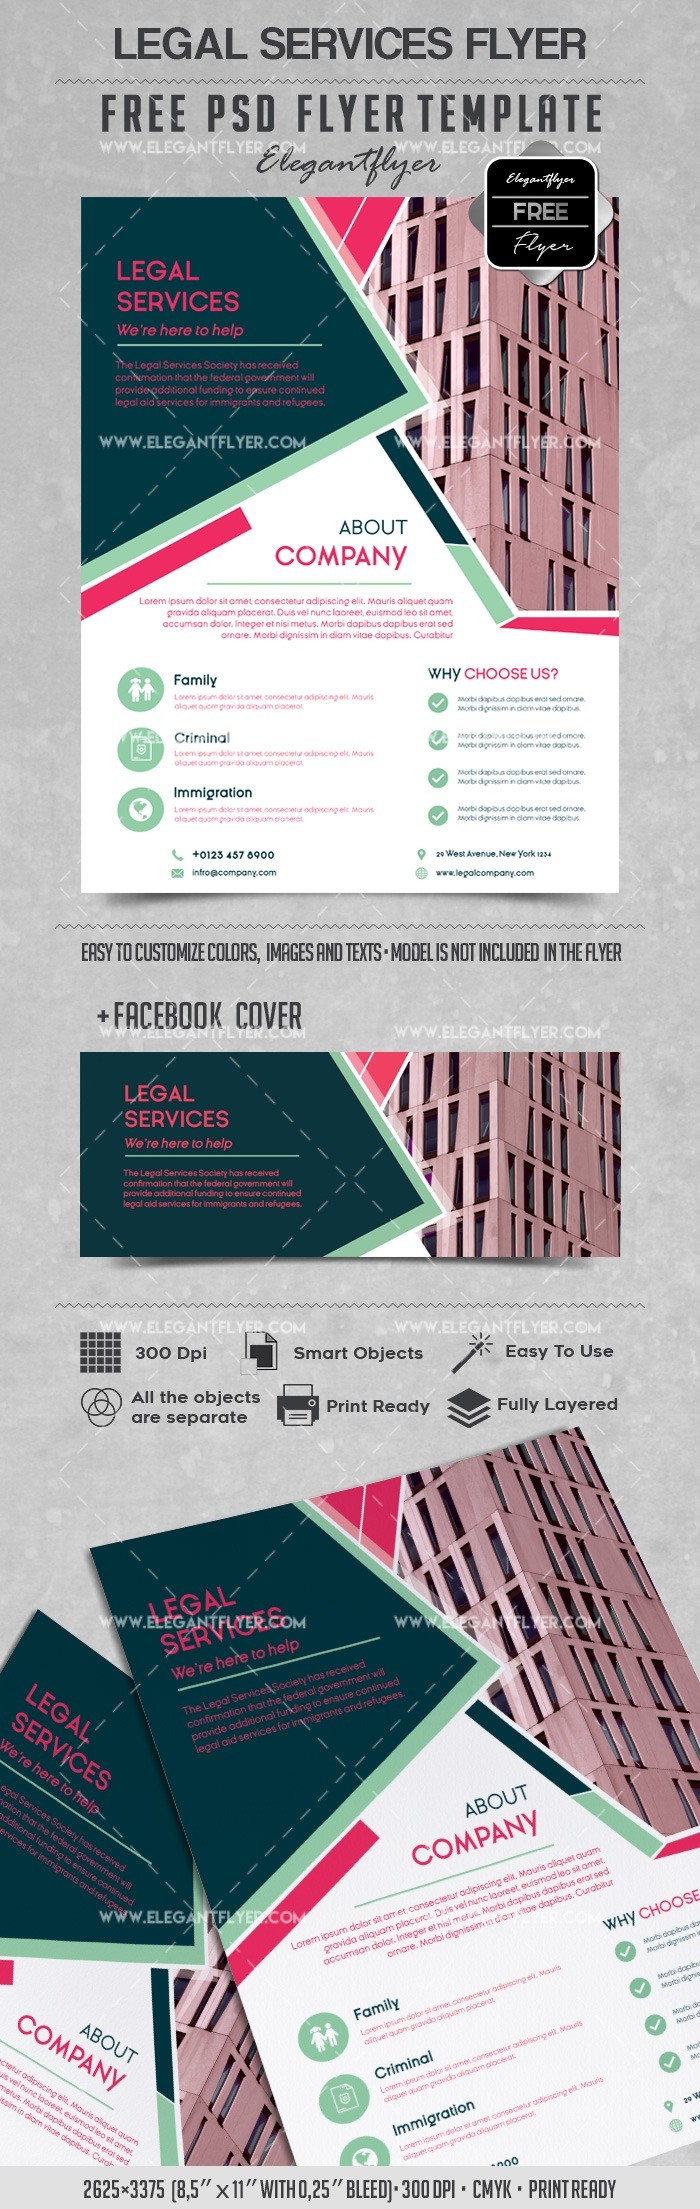 Legal Services Corp -> Corporation des Services Juridiques by ElegantFlyer